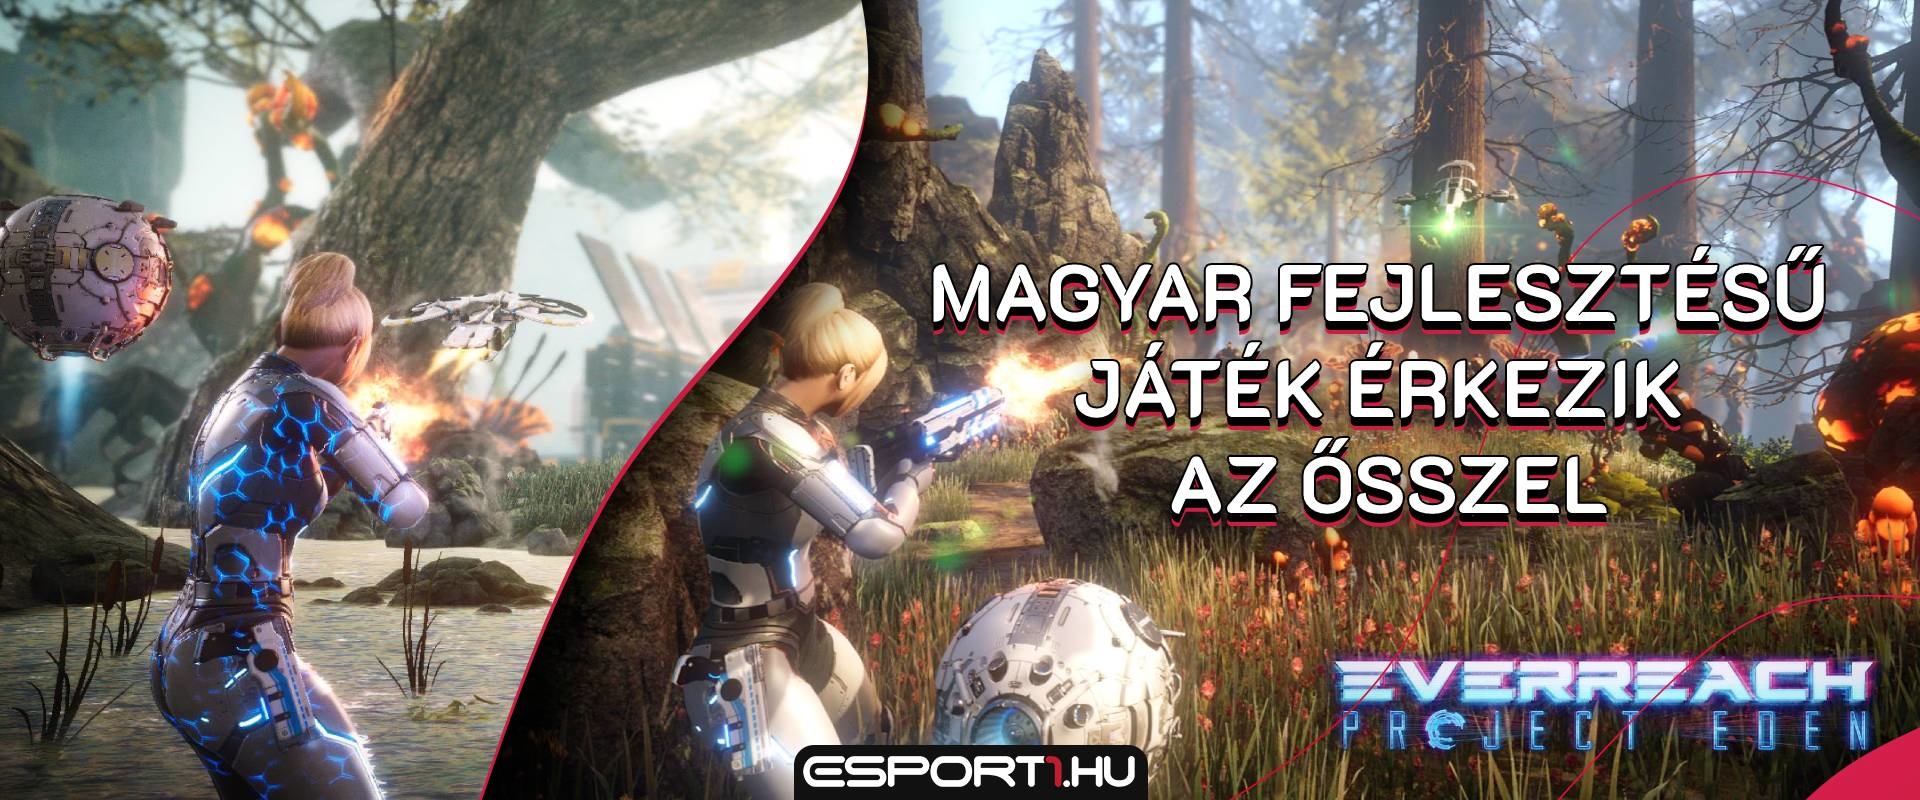 A Mass Effect trilógia előtt tiszteleg az új, magyar fejlesztésű akció-RPG - Tarsoly Edével beszélgettünk